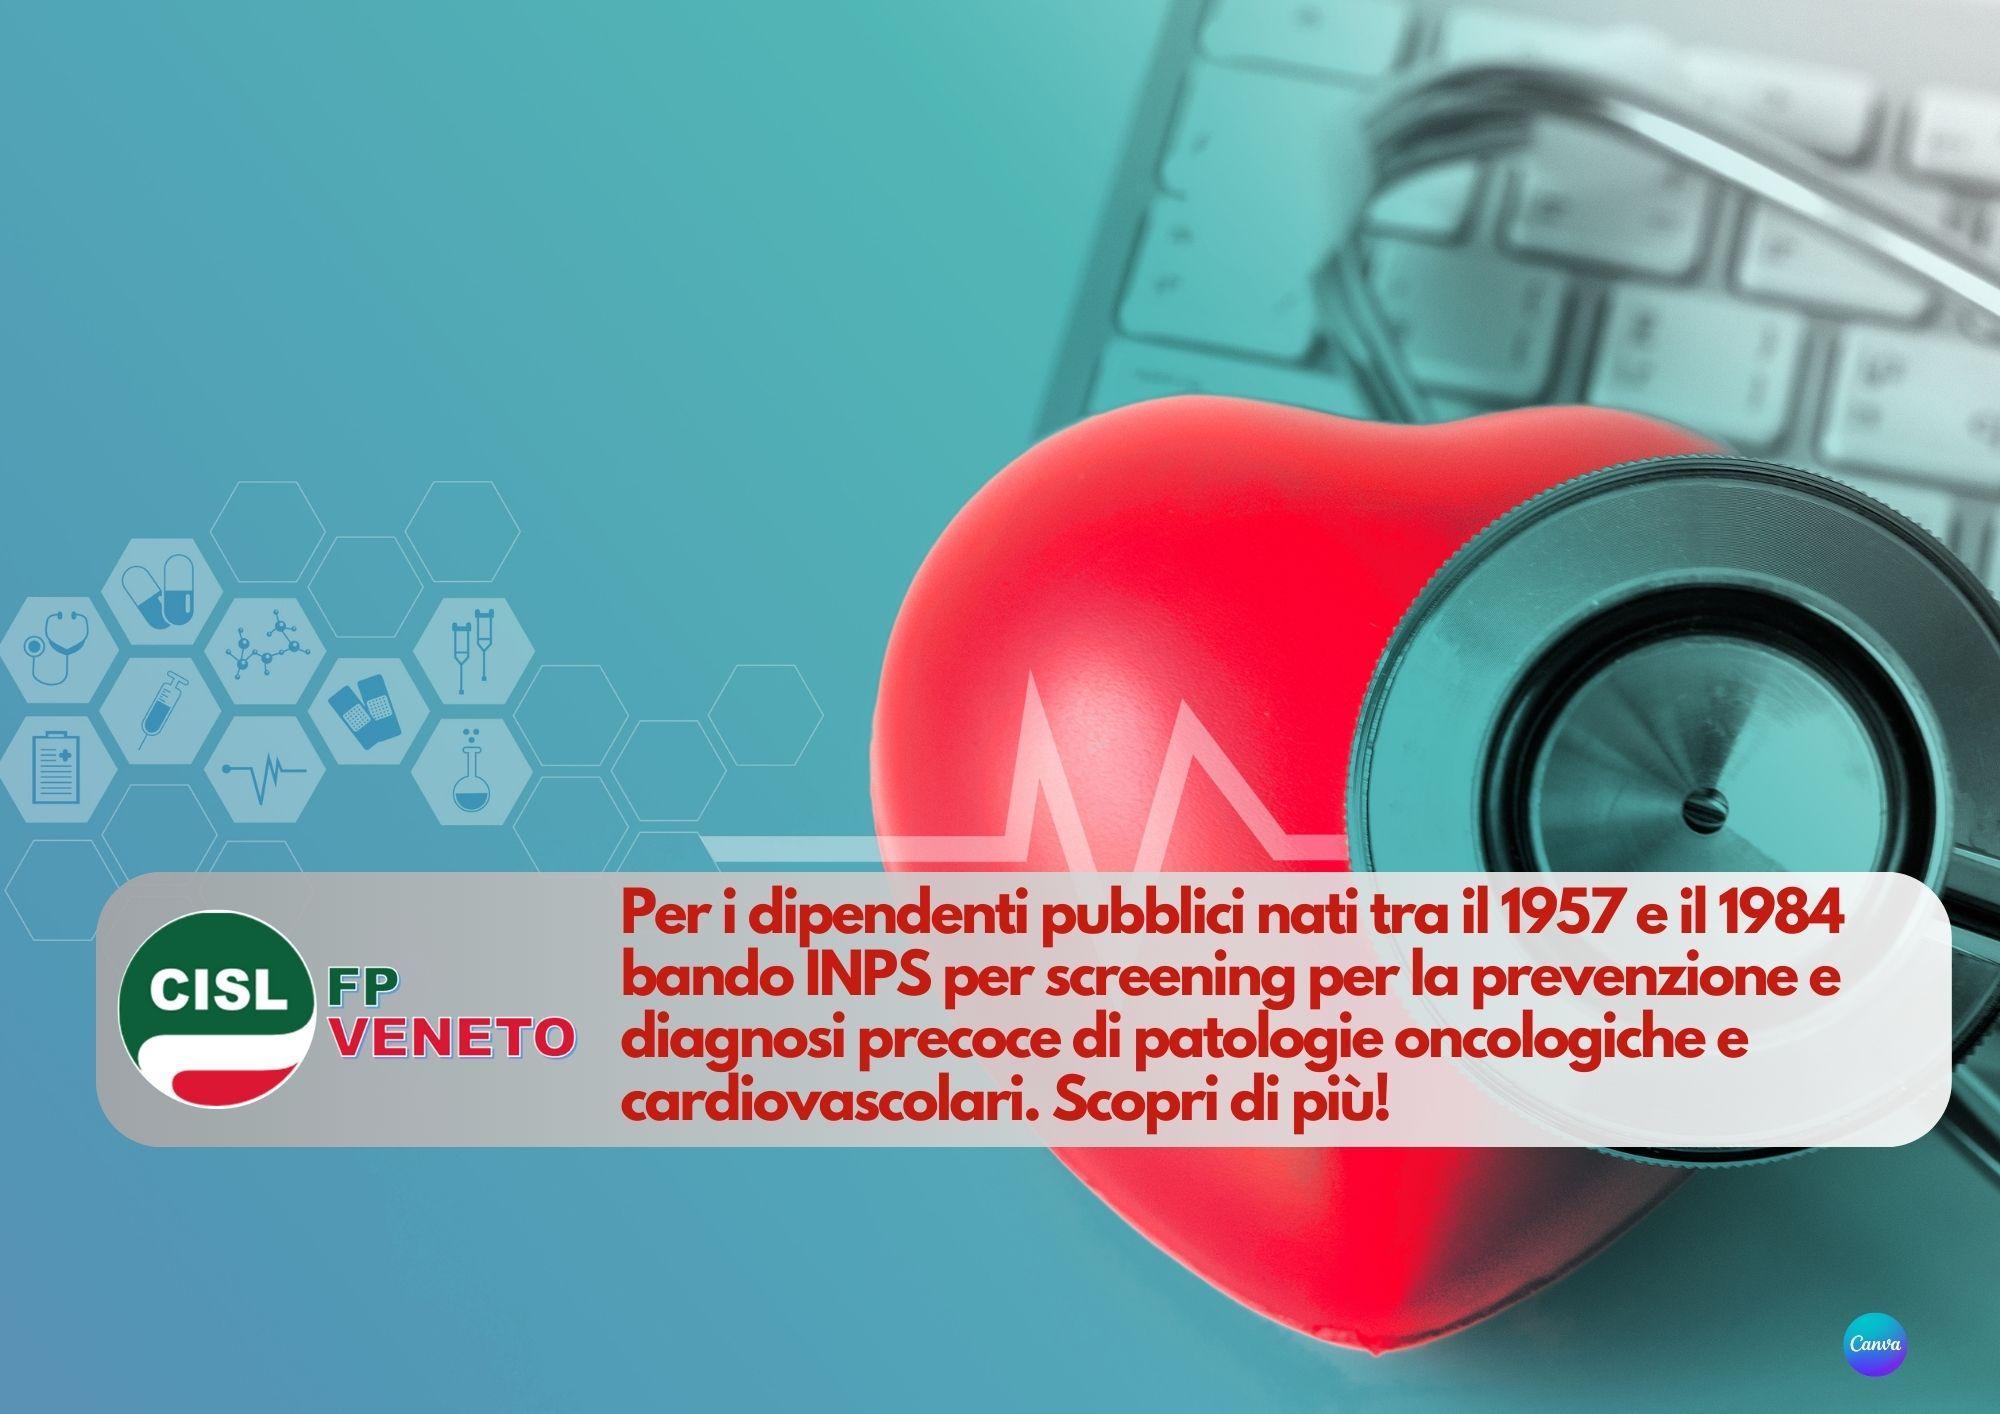 CISL FP Veneto. Pubblico impiego: bando INPS screening patologie oncologiche e cardiovascolari